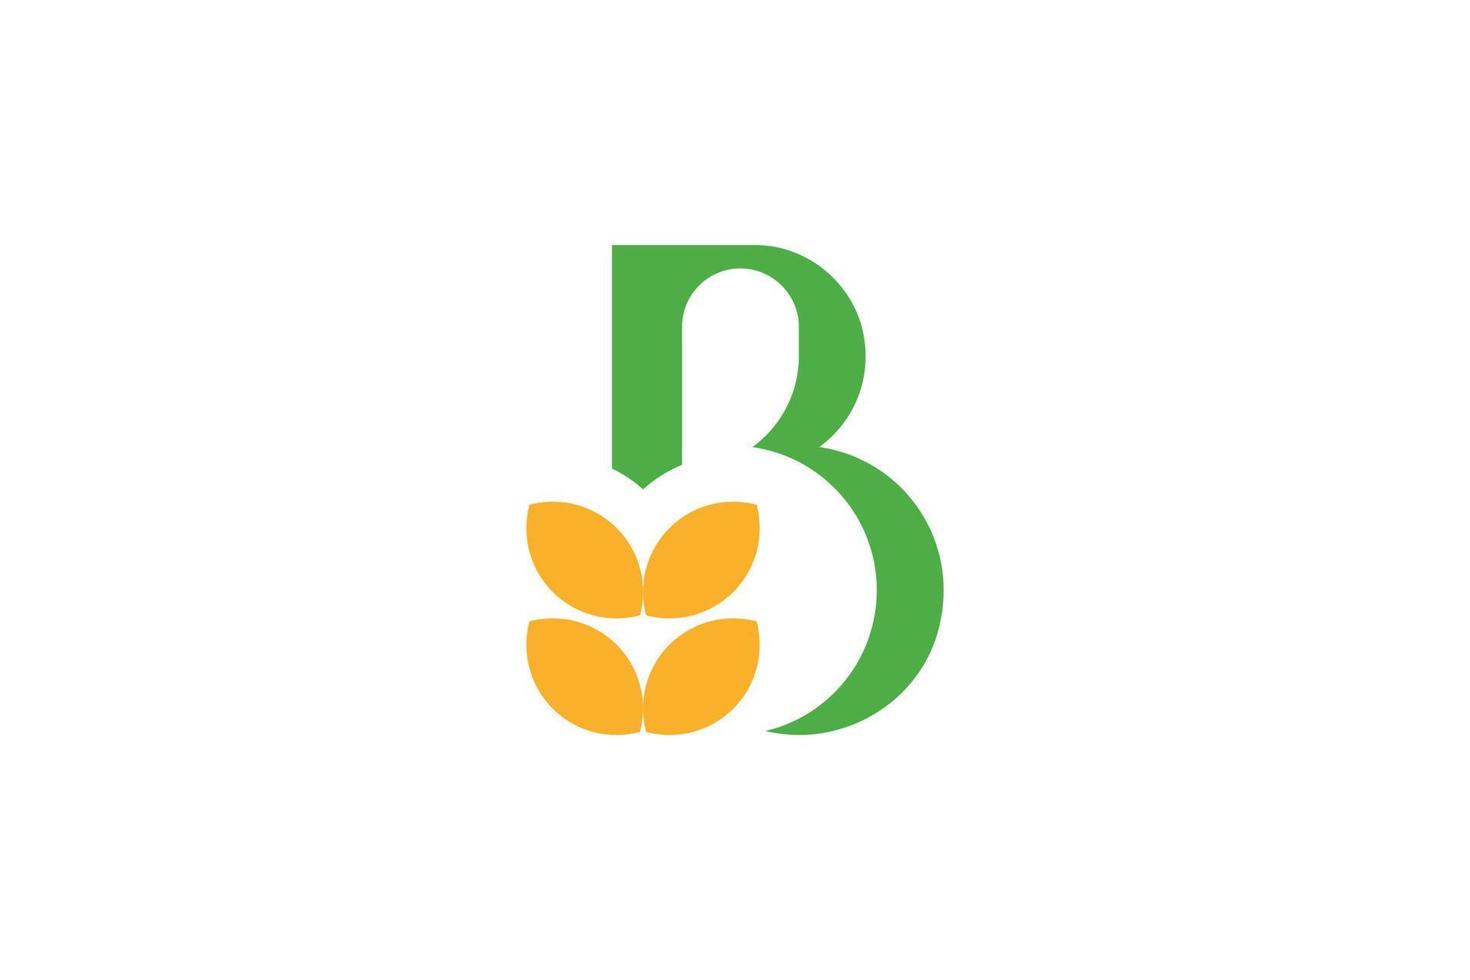 B Letter Initial Logo vector